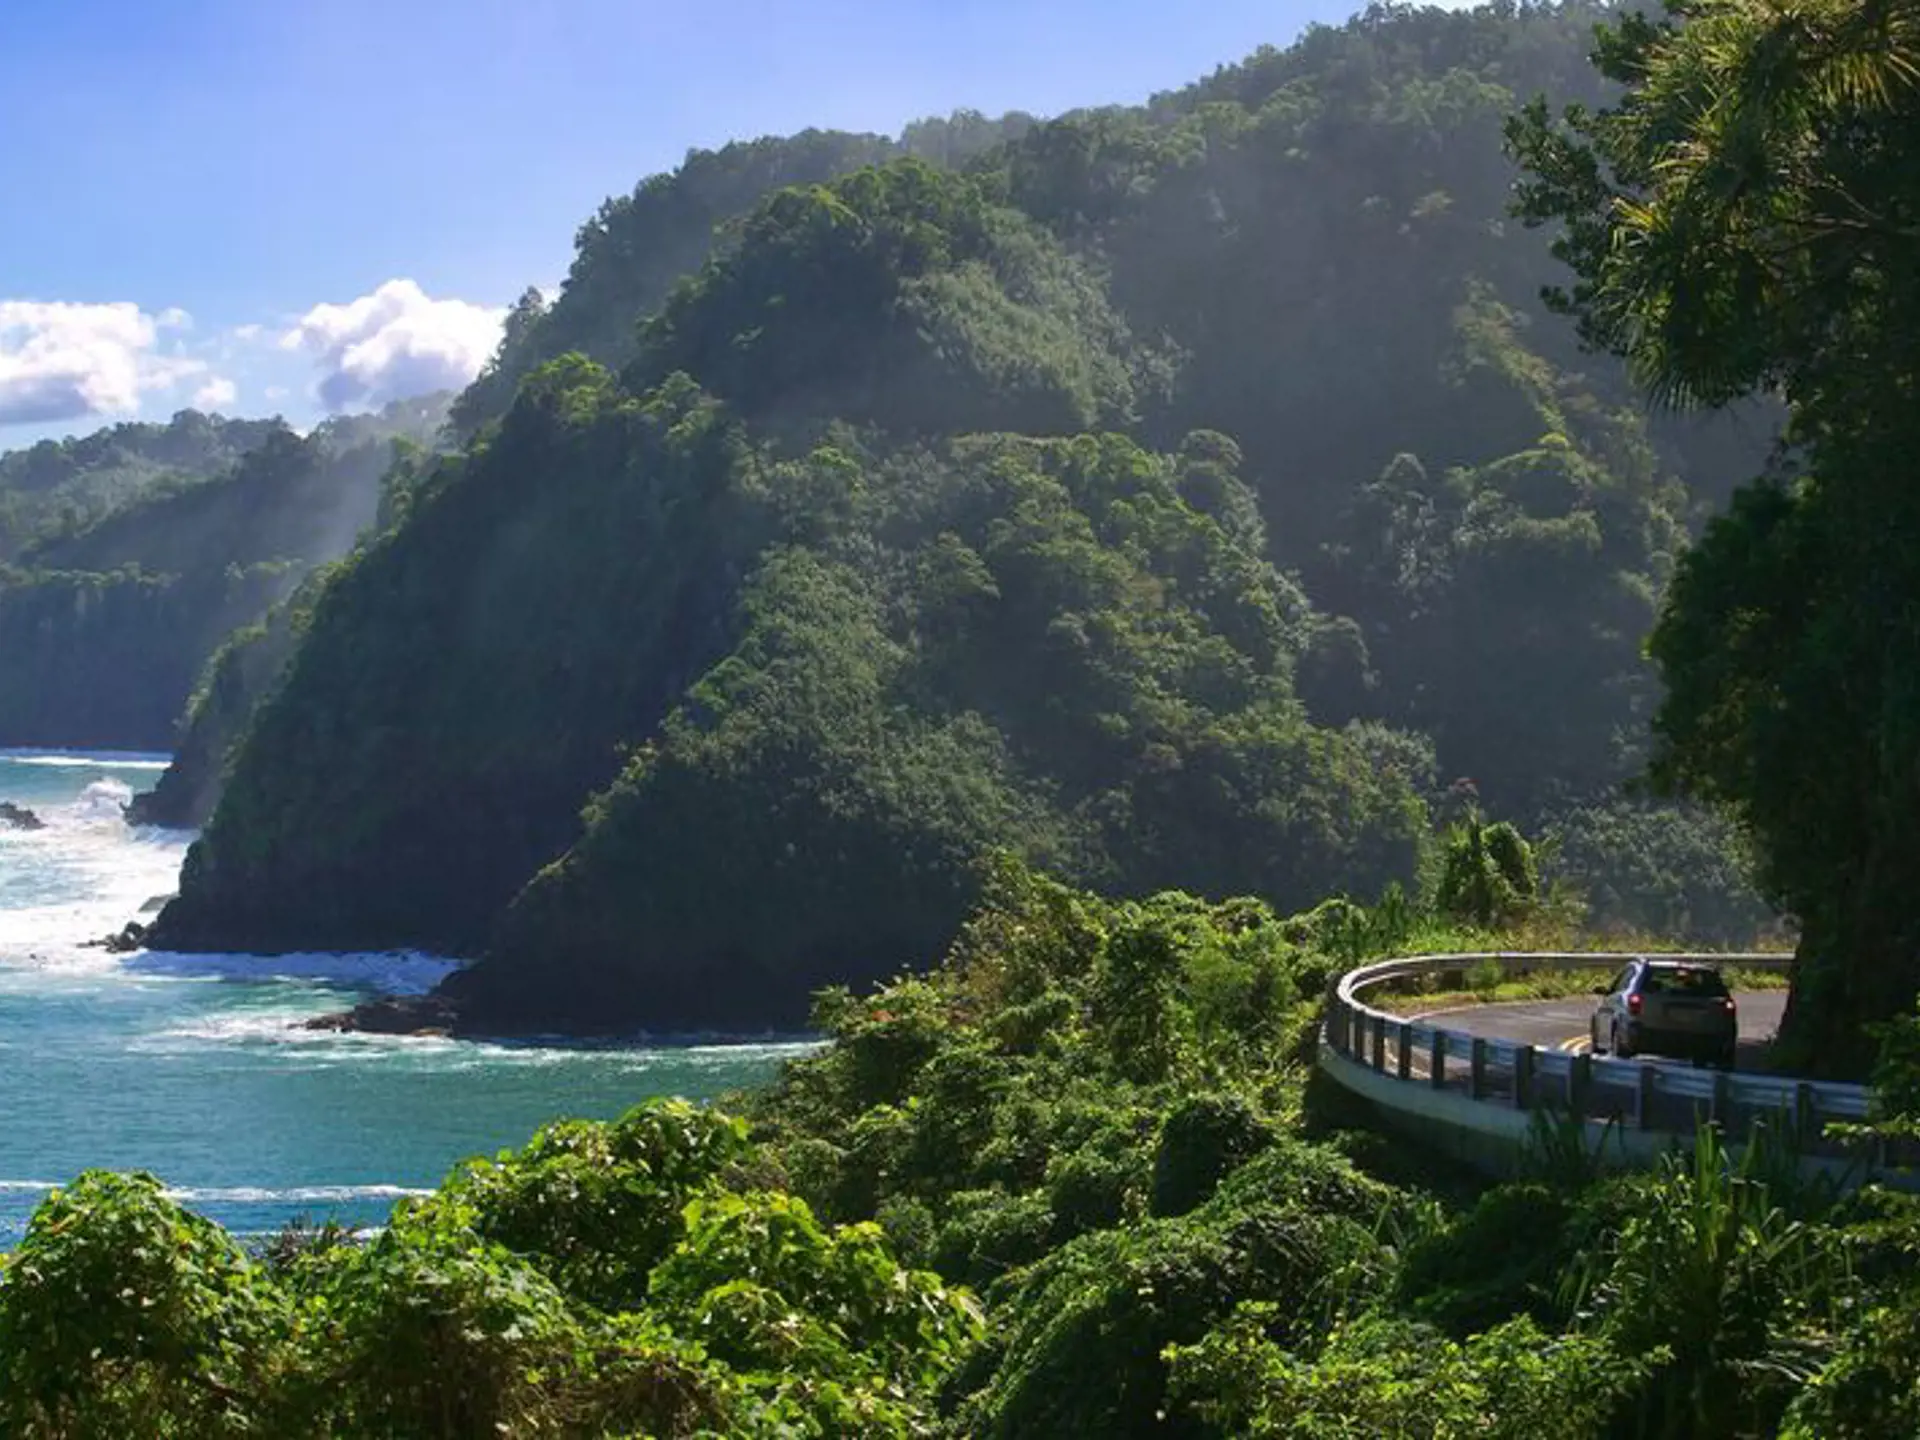 HANA - vejen til Hana følger den bugtende kyststrækning helt tæt og er blandt de klassiske køreture på Hawaii, Check Point Travel